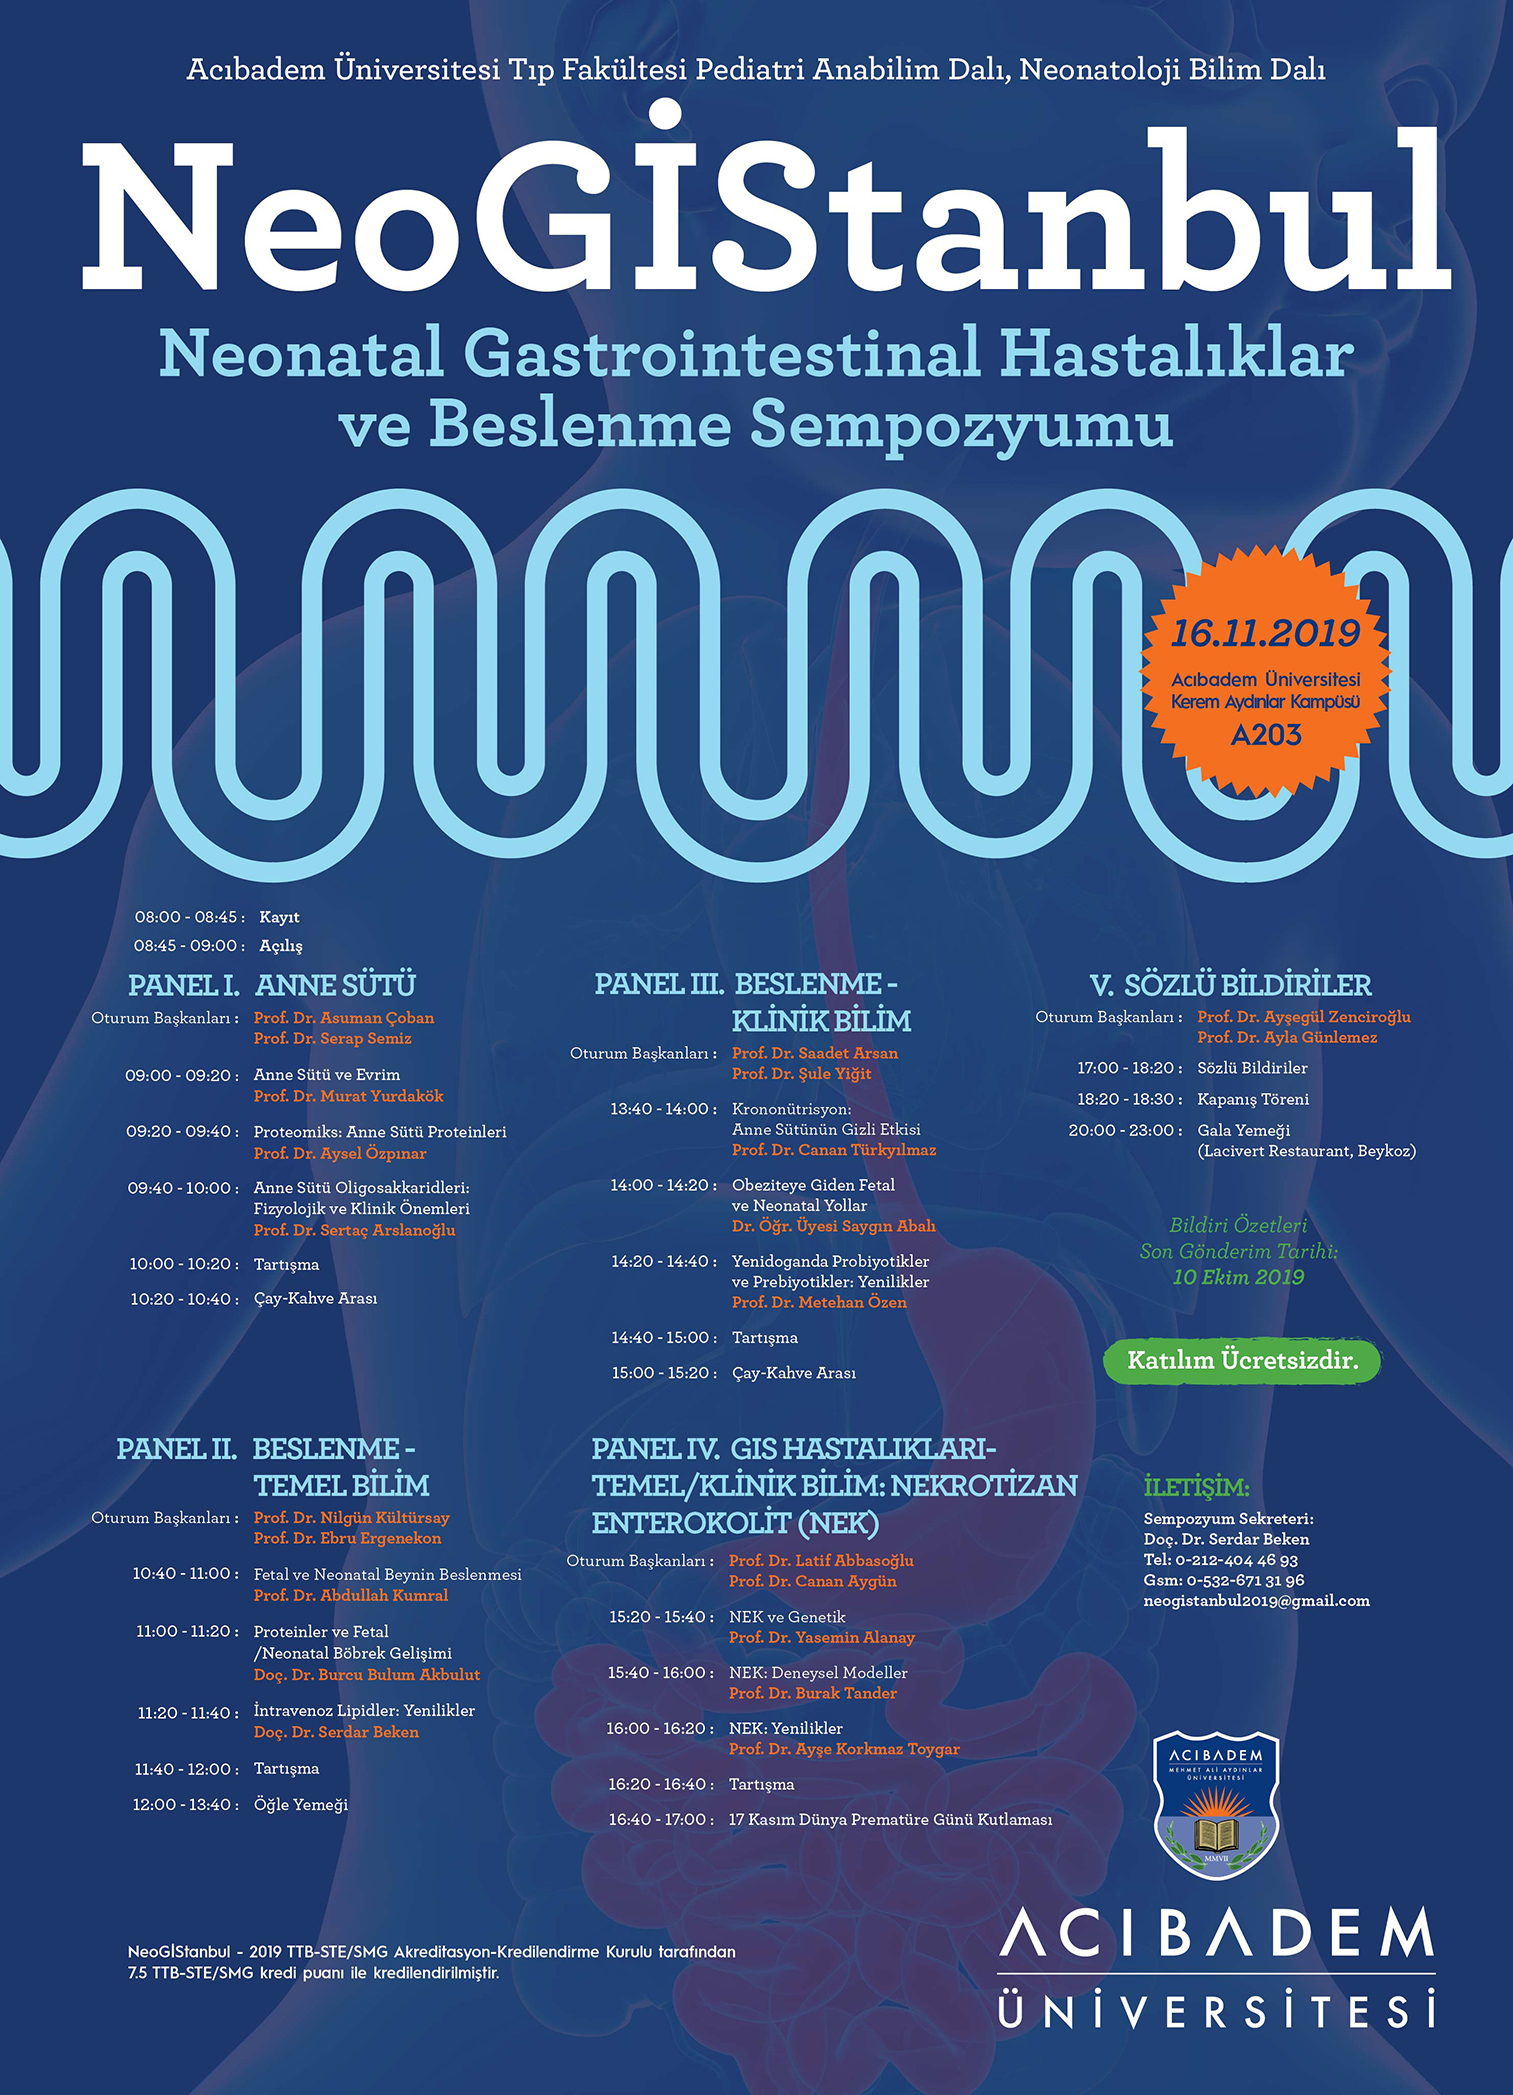 NeoGIStanbul-2019 "Neonatal Gastrointestinal Hastalıklar ve Beslenme Sempozyumu"